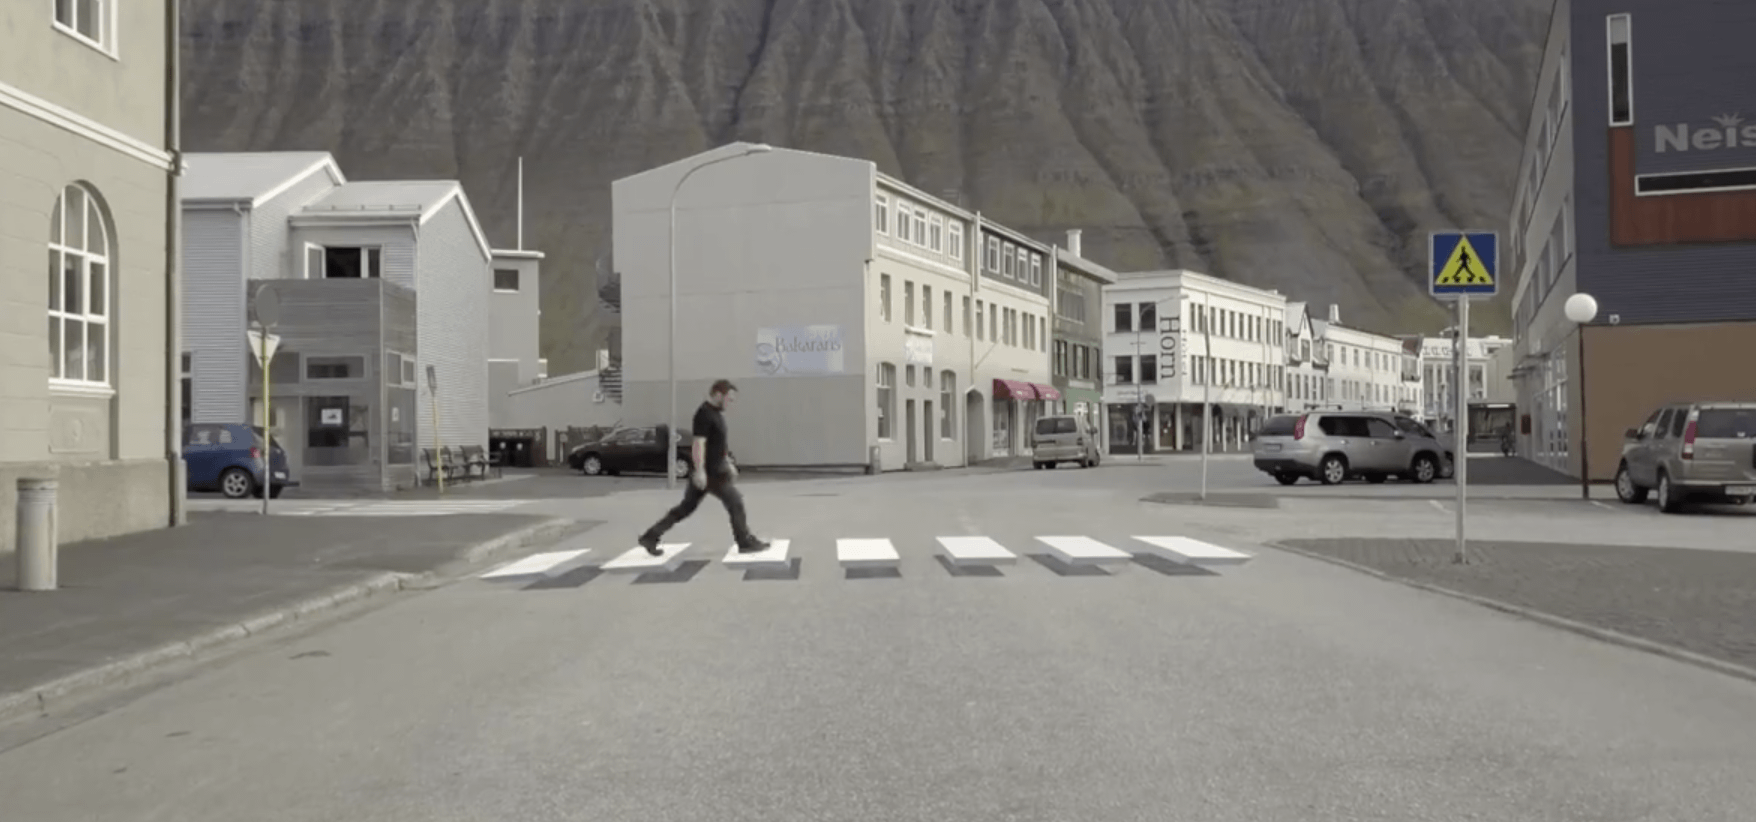 Strisce pedonali tridimensionali: Ecco cosa hanno creato gli Islandesi per rallentare il traffico